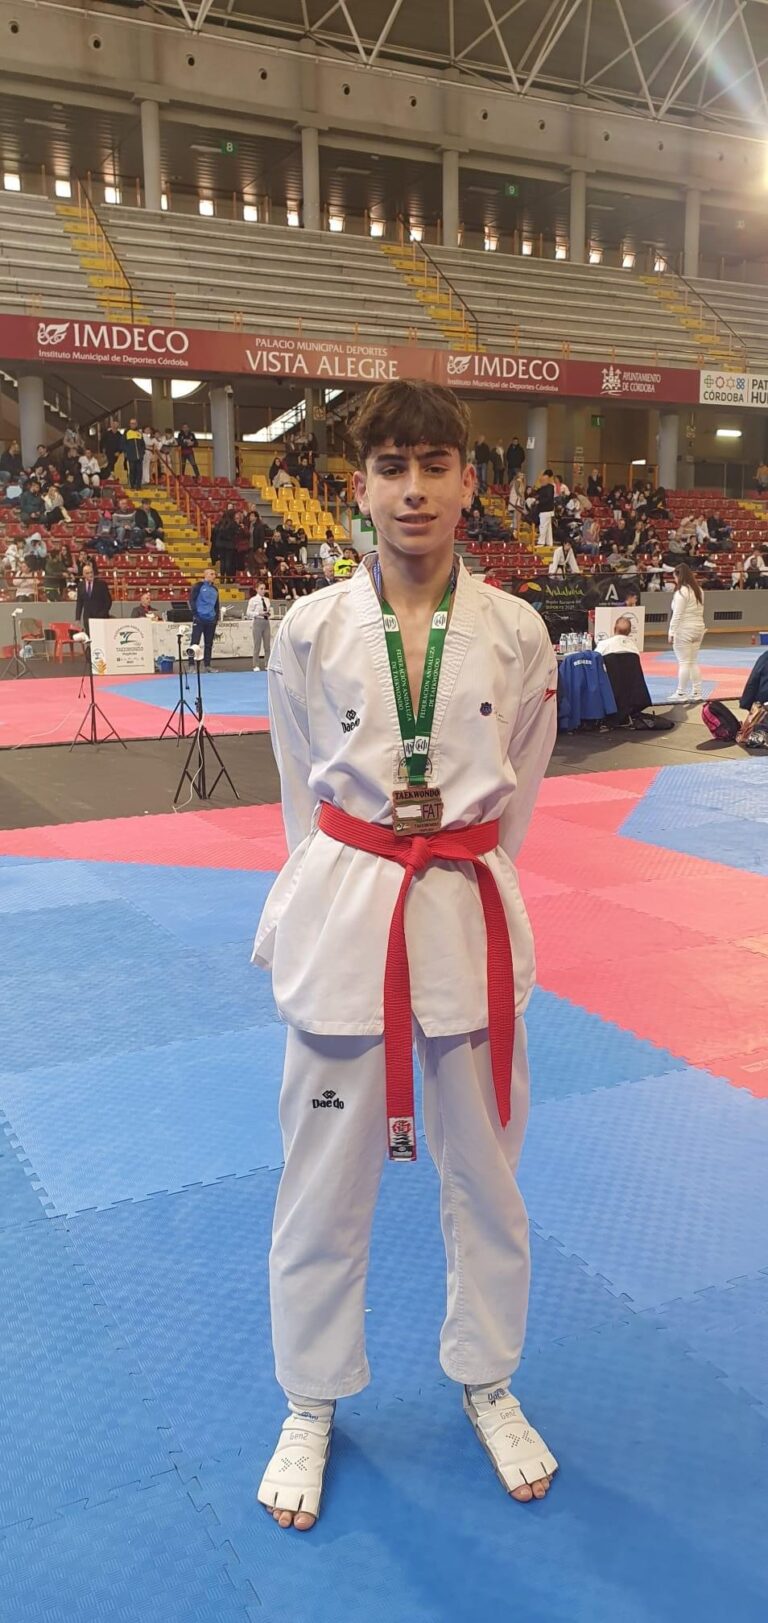 Xavier Ginard Clemente del Club Esportiu Taekwondo Marratxí, bronse en Andalusia